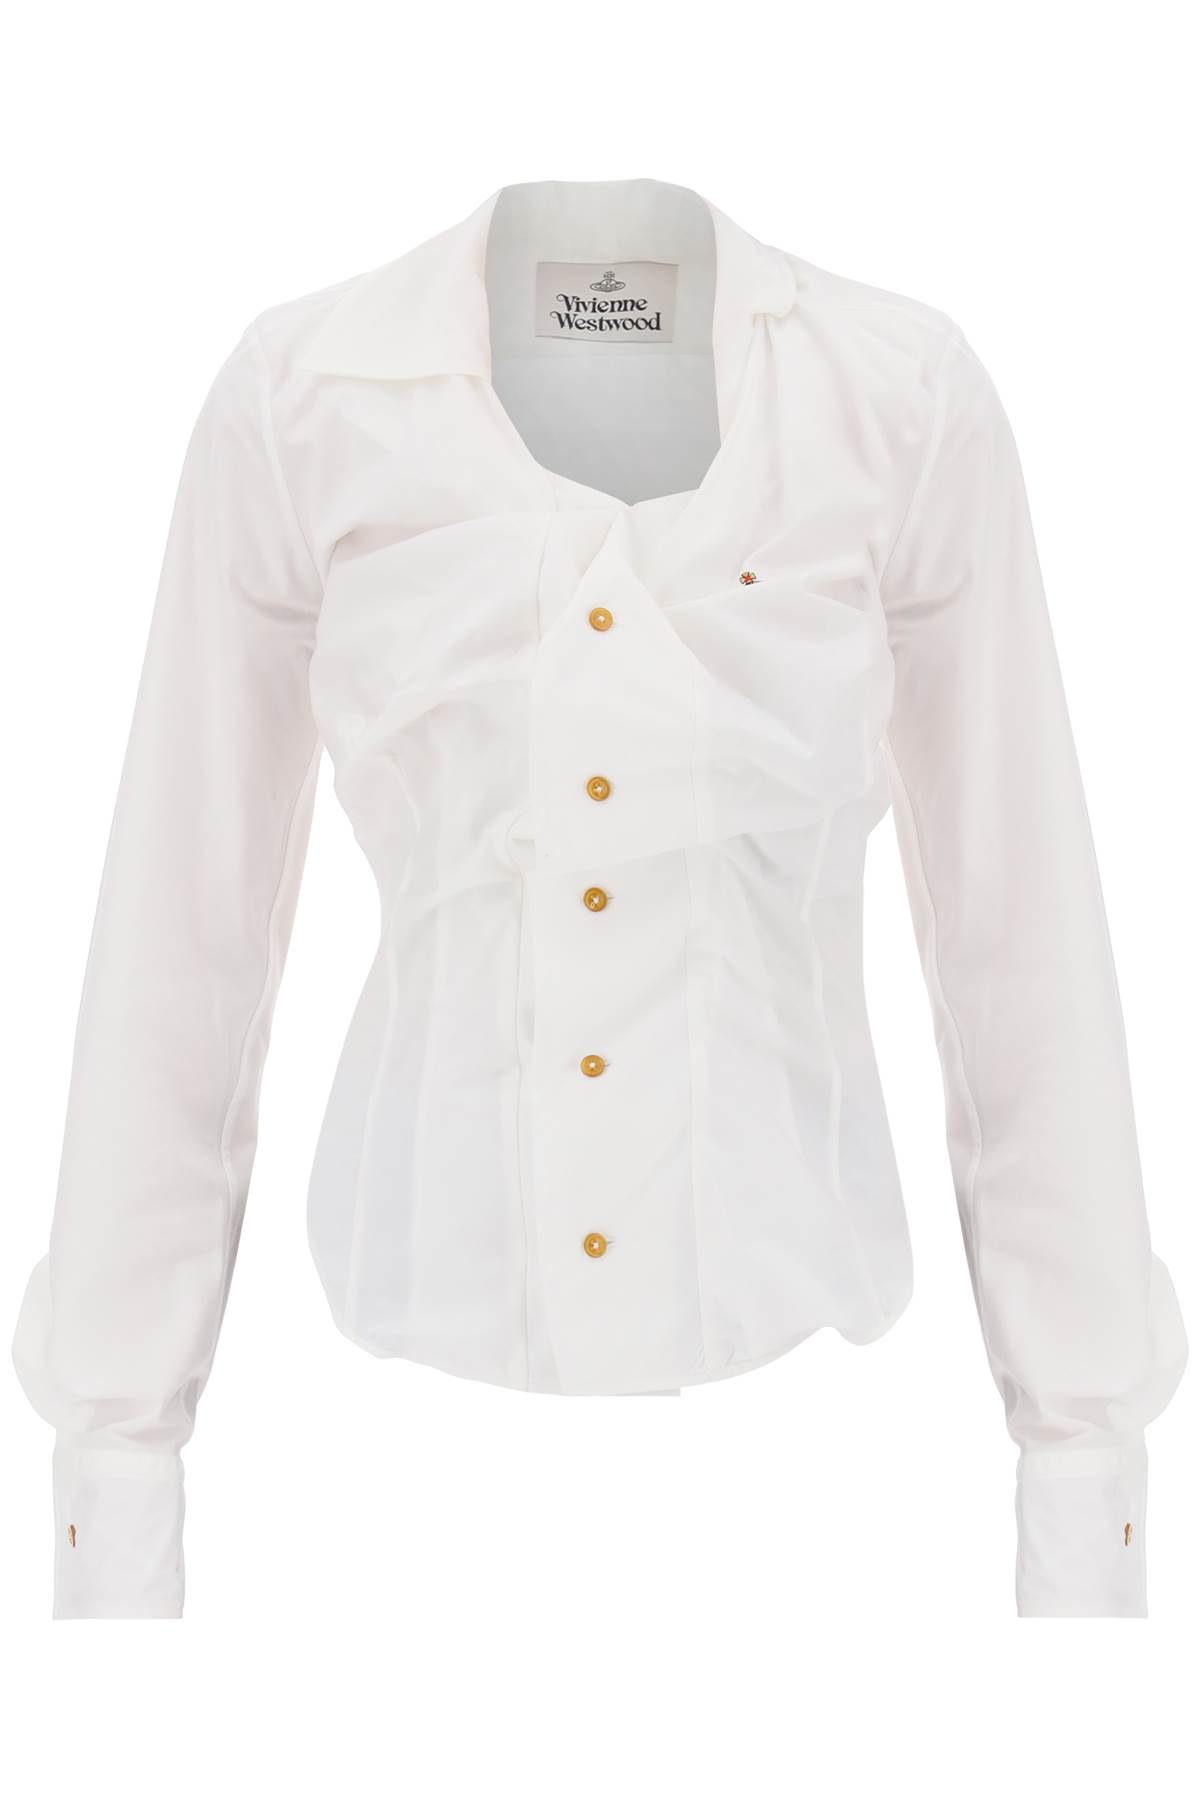 Shop Vivienne Westwood Poplin Drunken Shirt In White